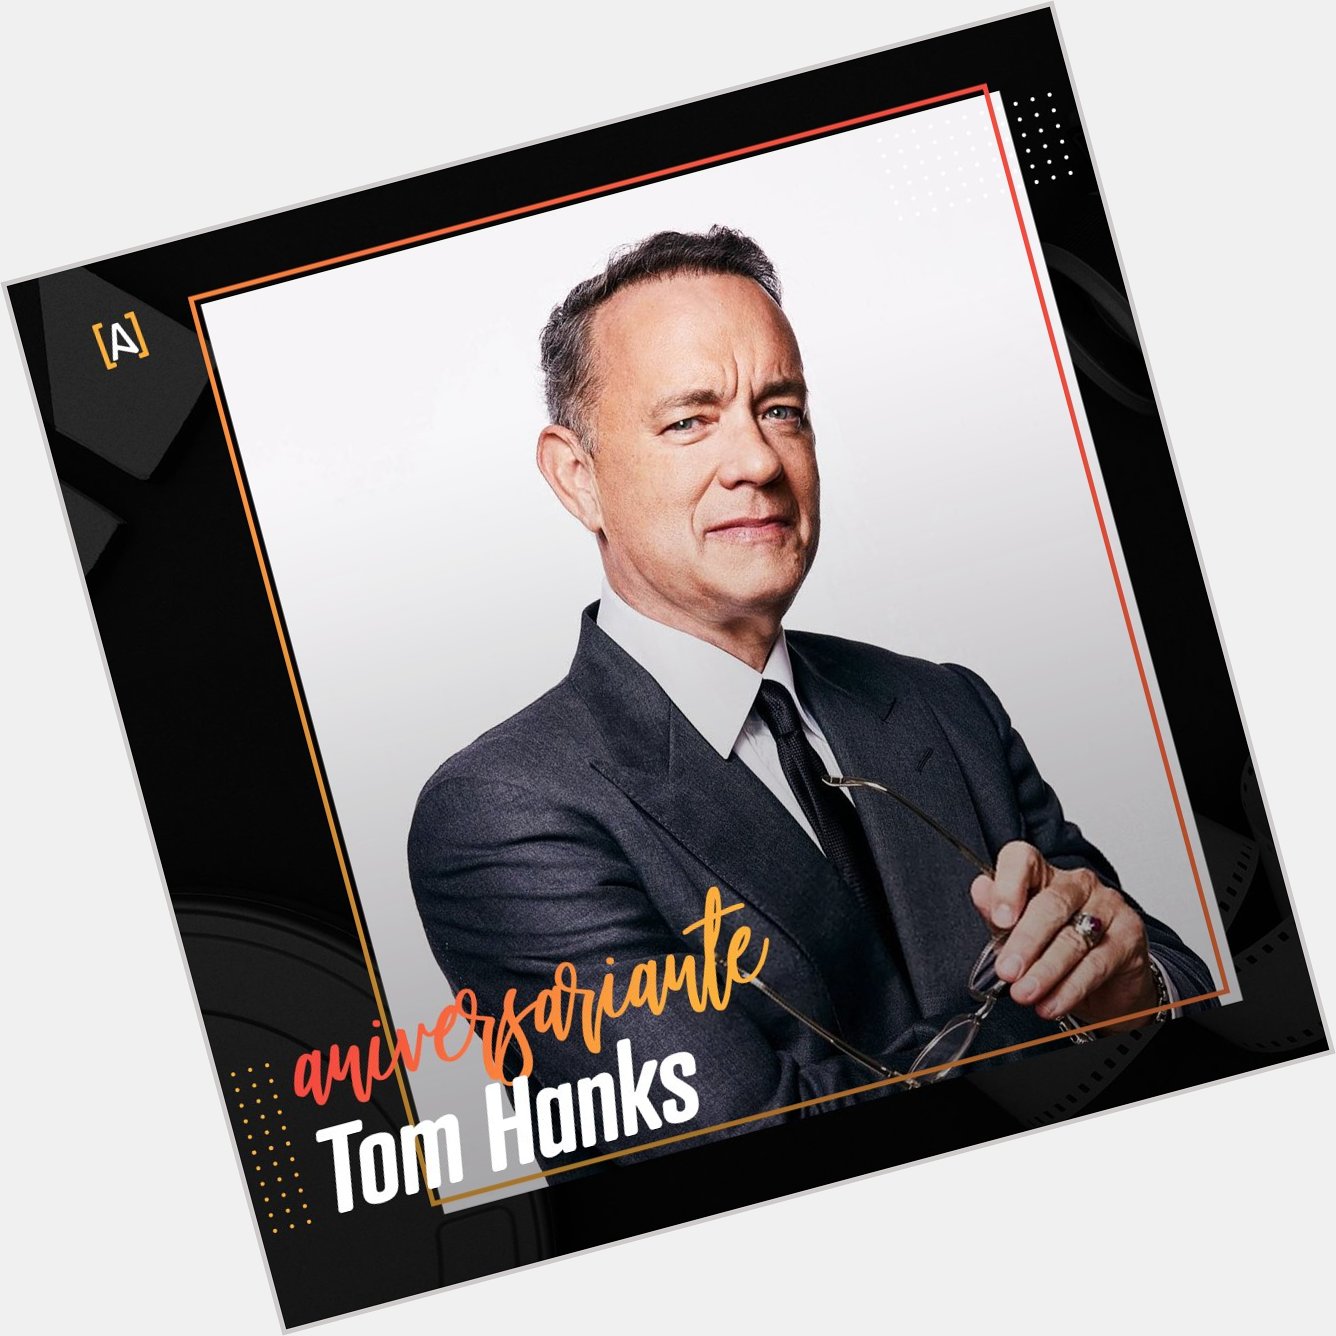 Tom Hanks é um poço de talento sem fim! Hoje o ator americano faz 65 anos!
Happy birthday Tom! 